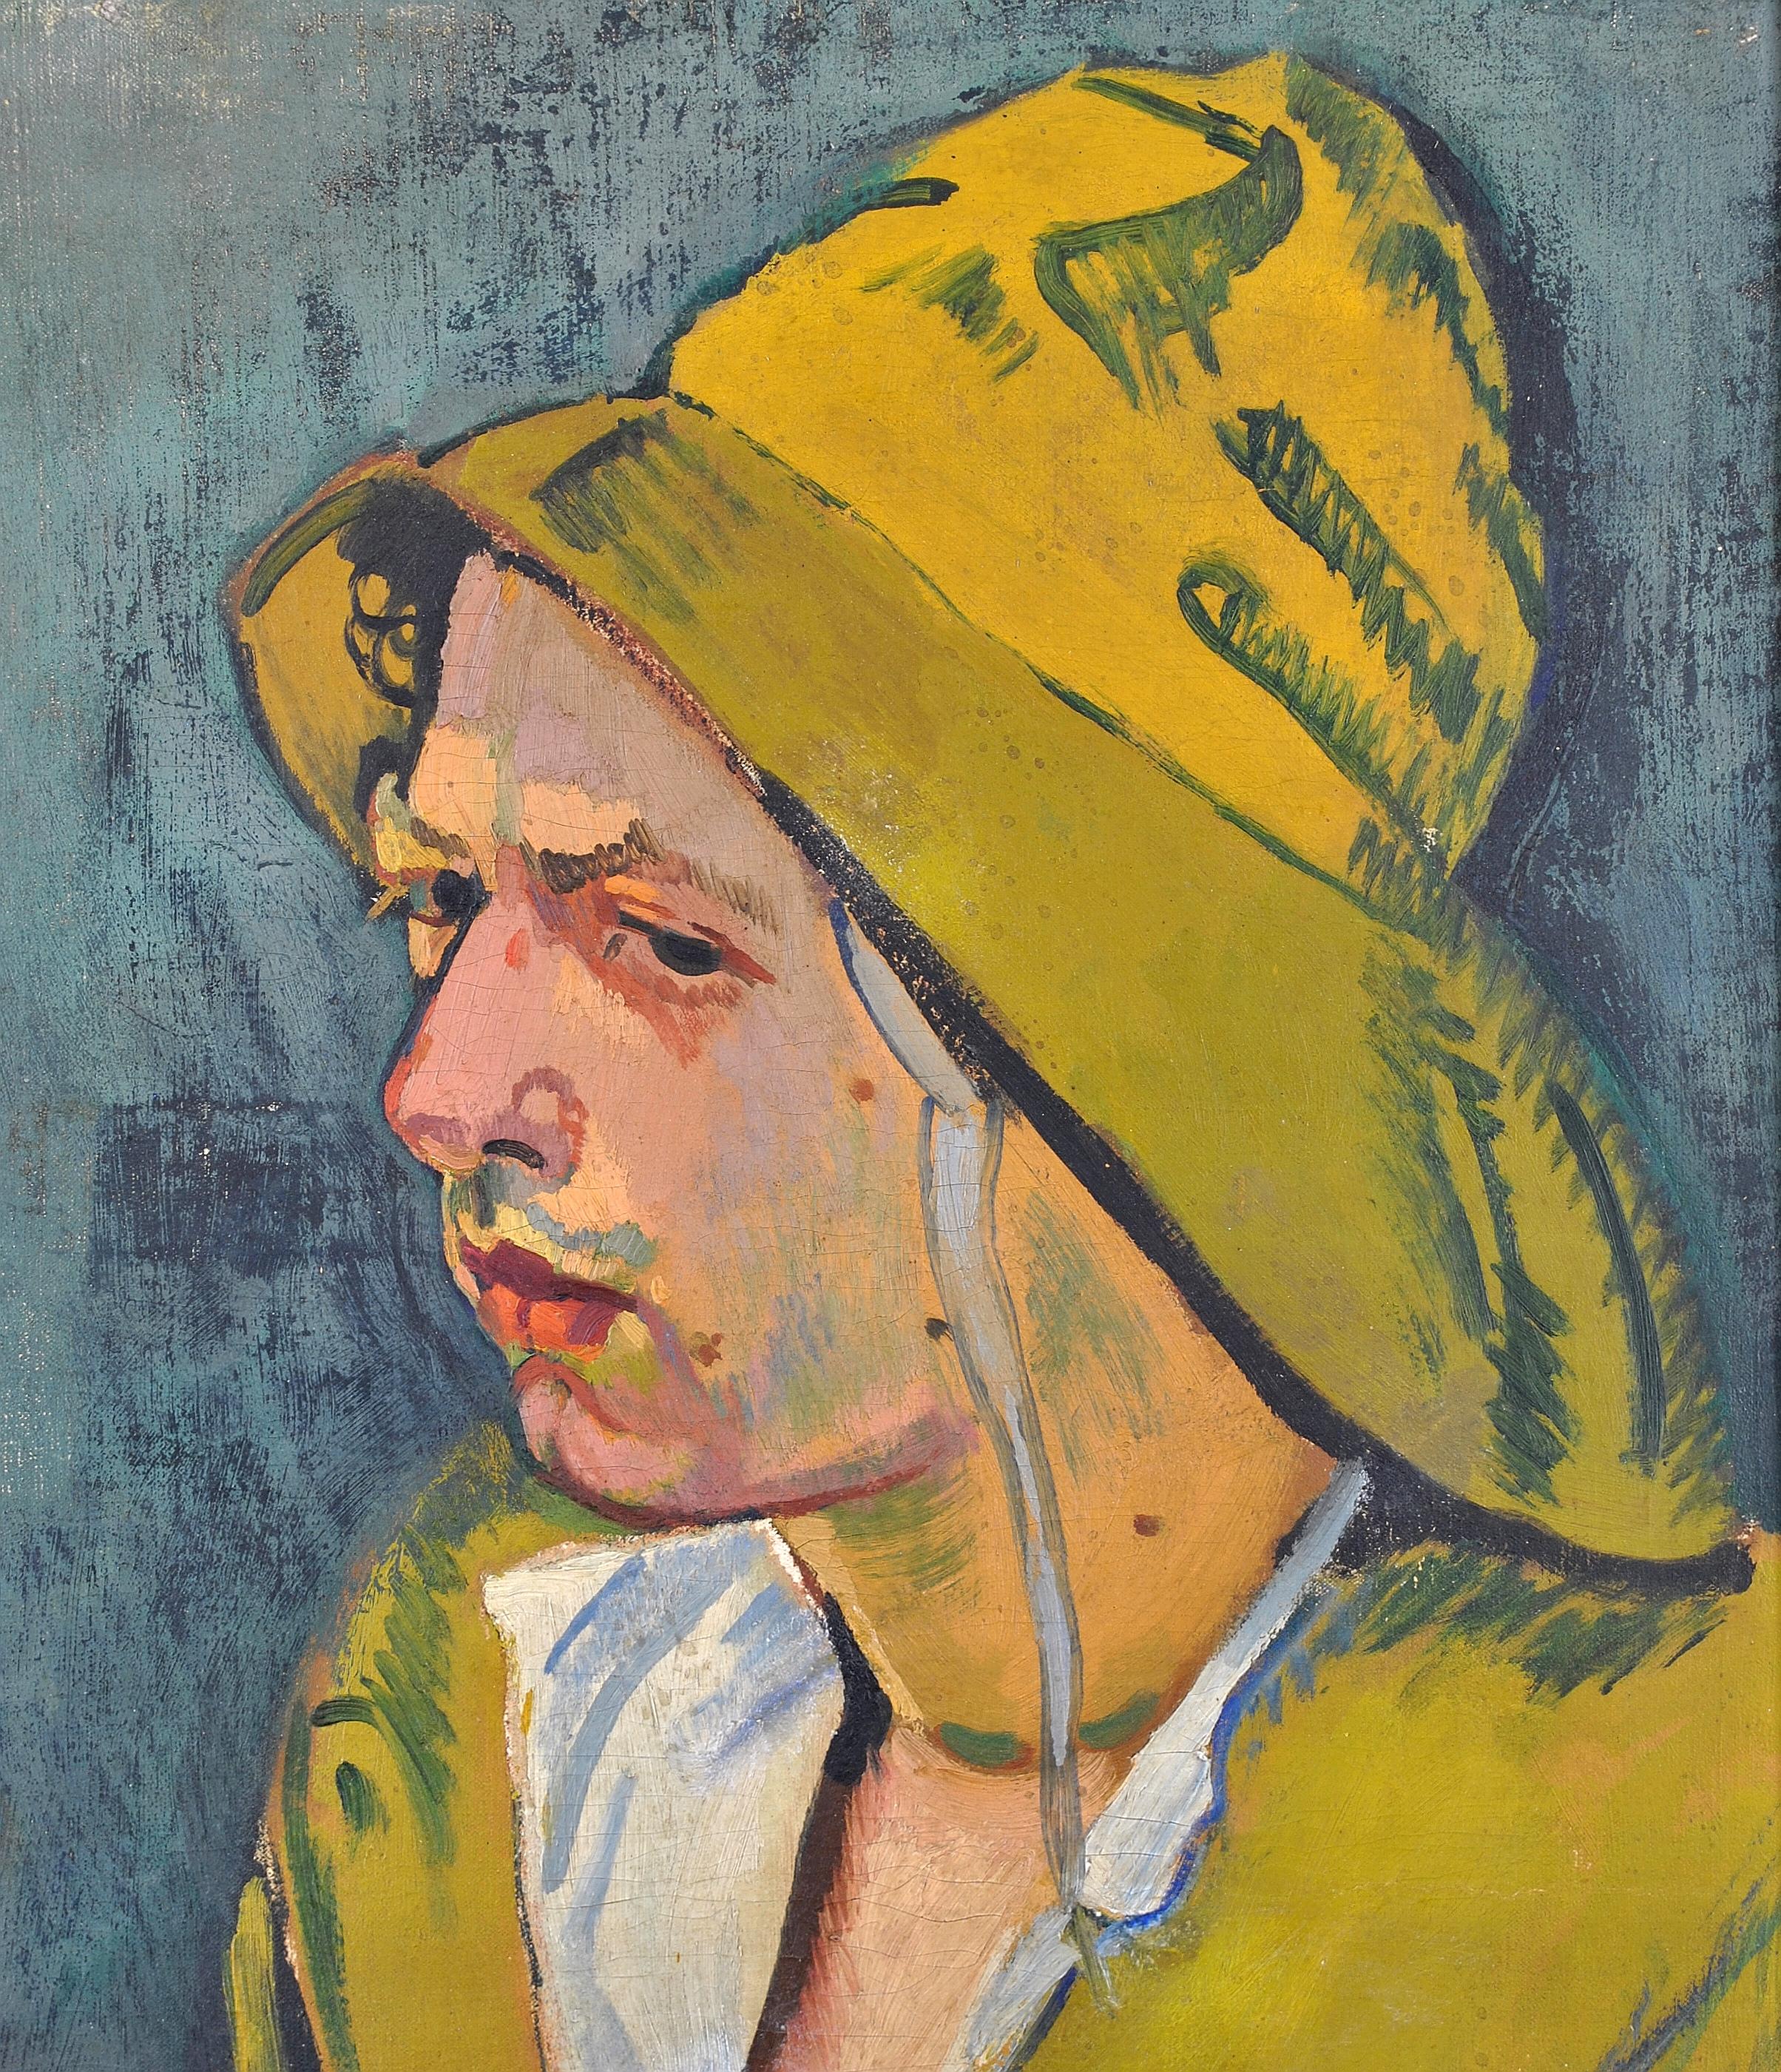 Ein schönes französisches oder möglicherweise deutsches postimpressionistisches Öl auf Leinwand-Porträt eines Fischers aus den 1920er Jahren. Hervorragende Qualitätsarbeit, gemalt mit schnellen, skizzenhaften Pinselstrichen vor einem gesprenkelten